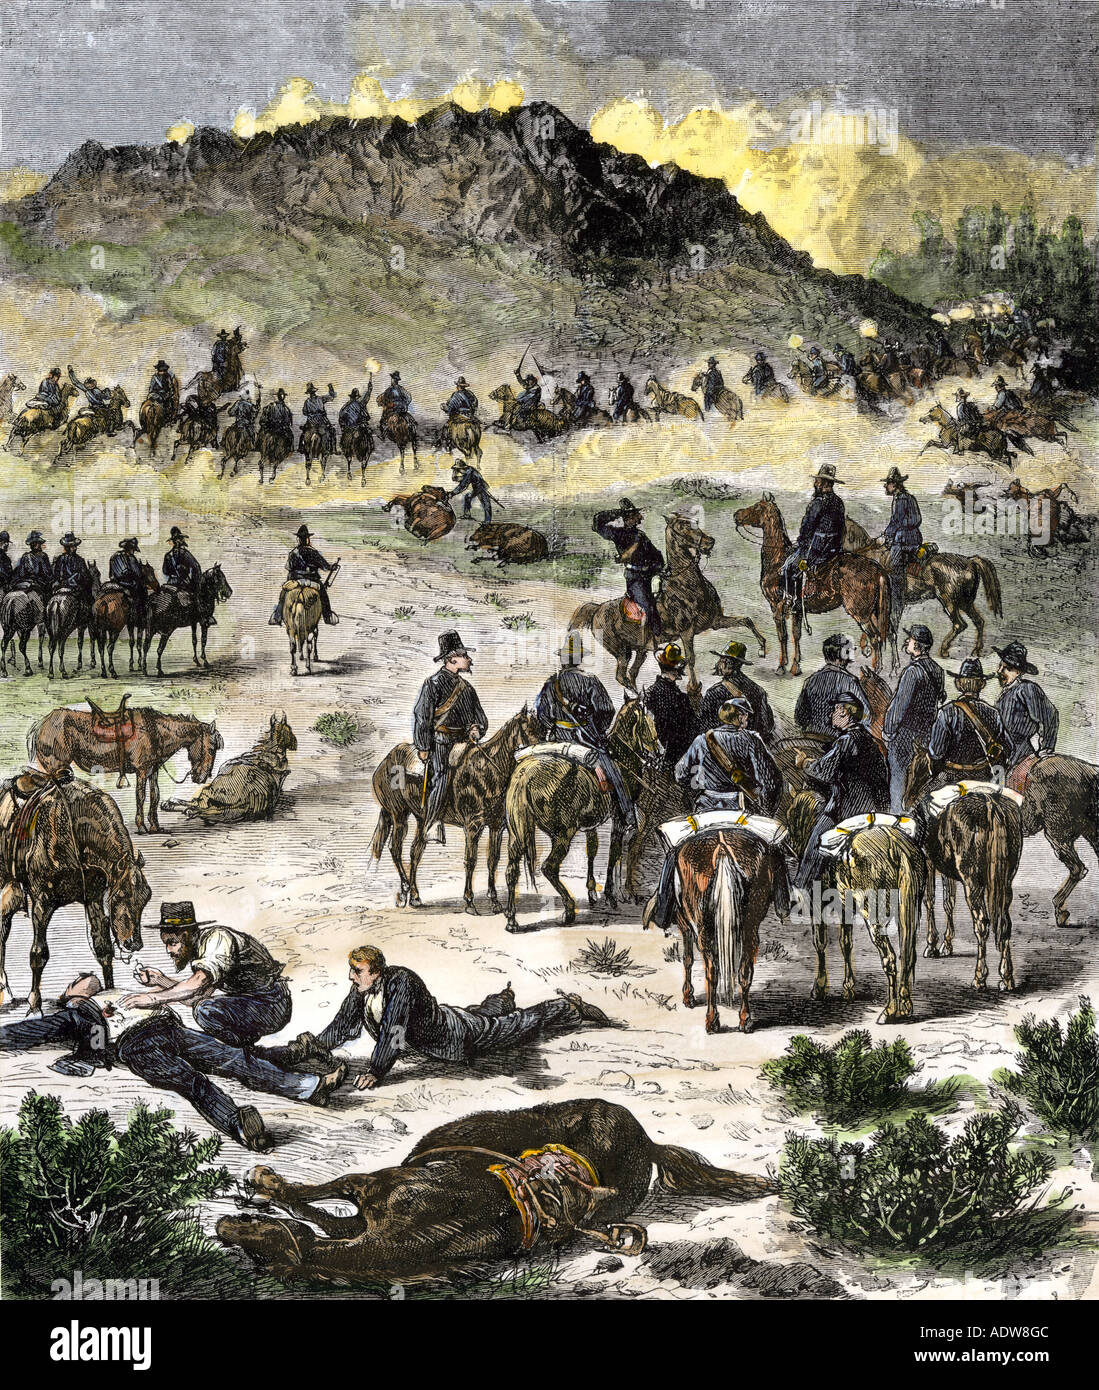 Bataille de Birch Creek pendant la guerre de l'est Nez Percé dans l'Oregon en 1878. À la main, gravure sur bois Banque D'Images